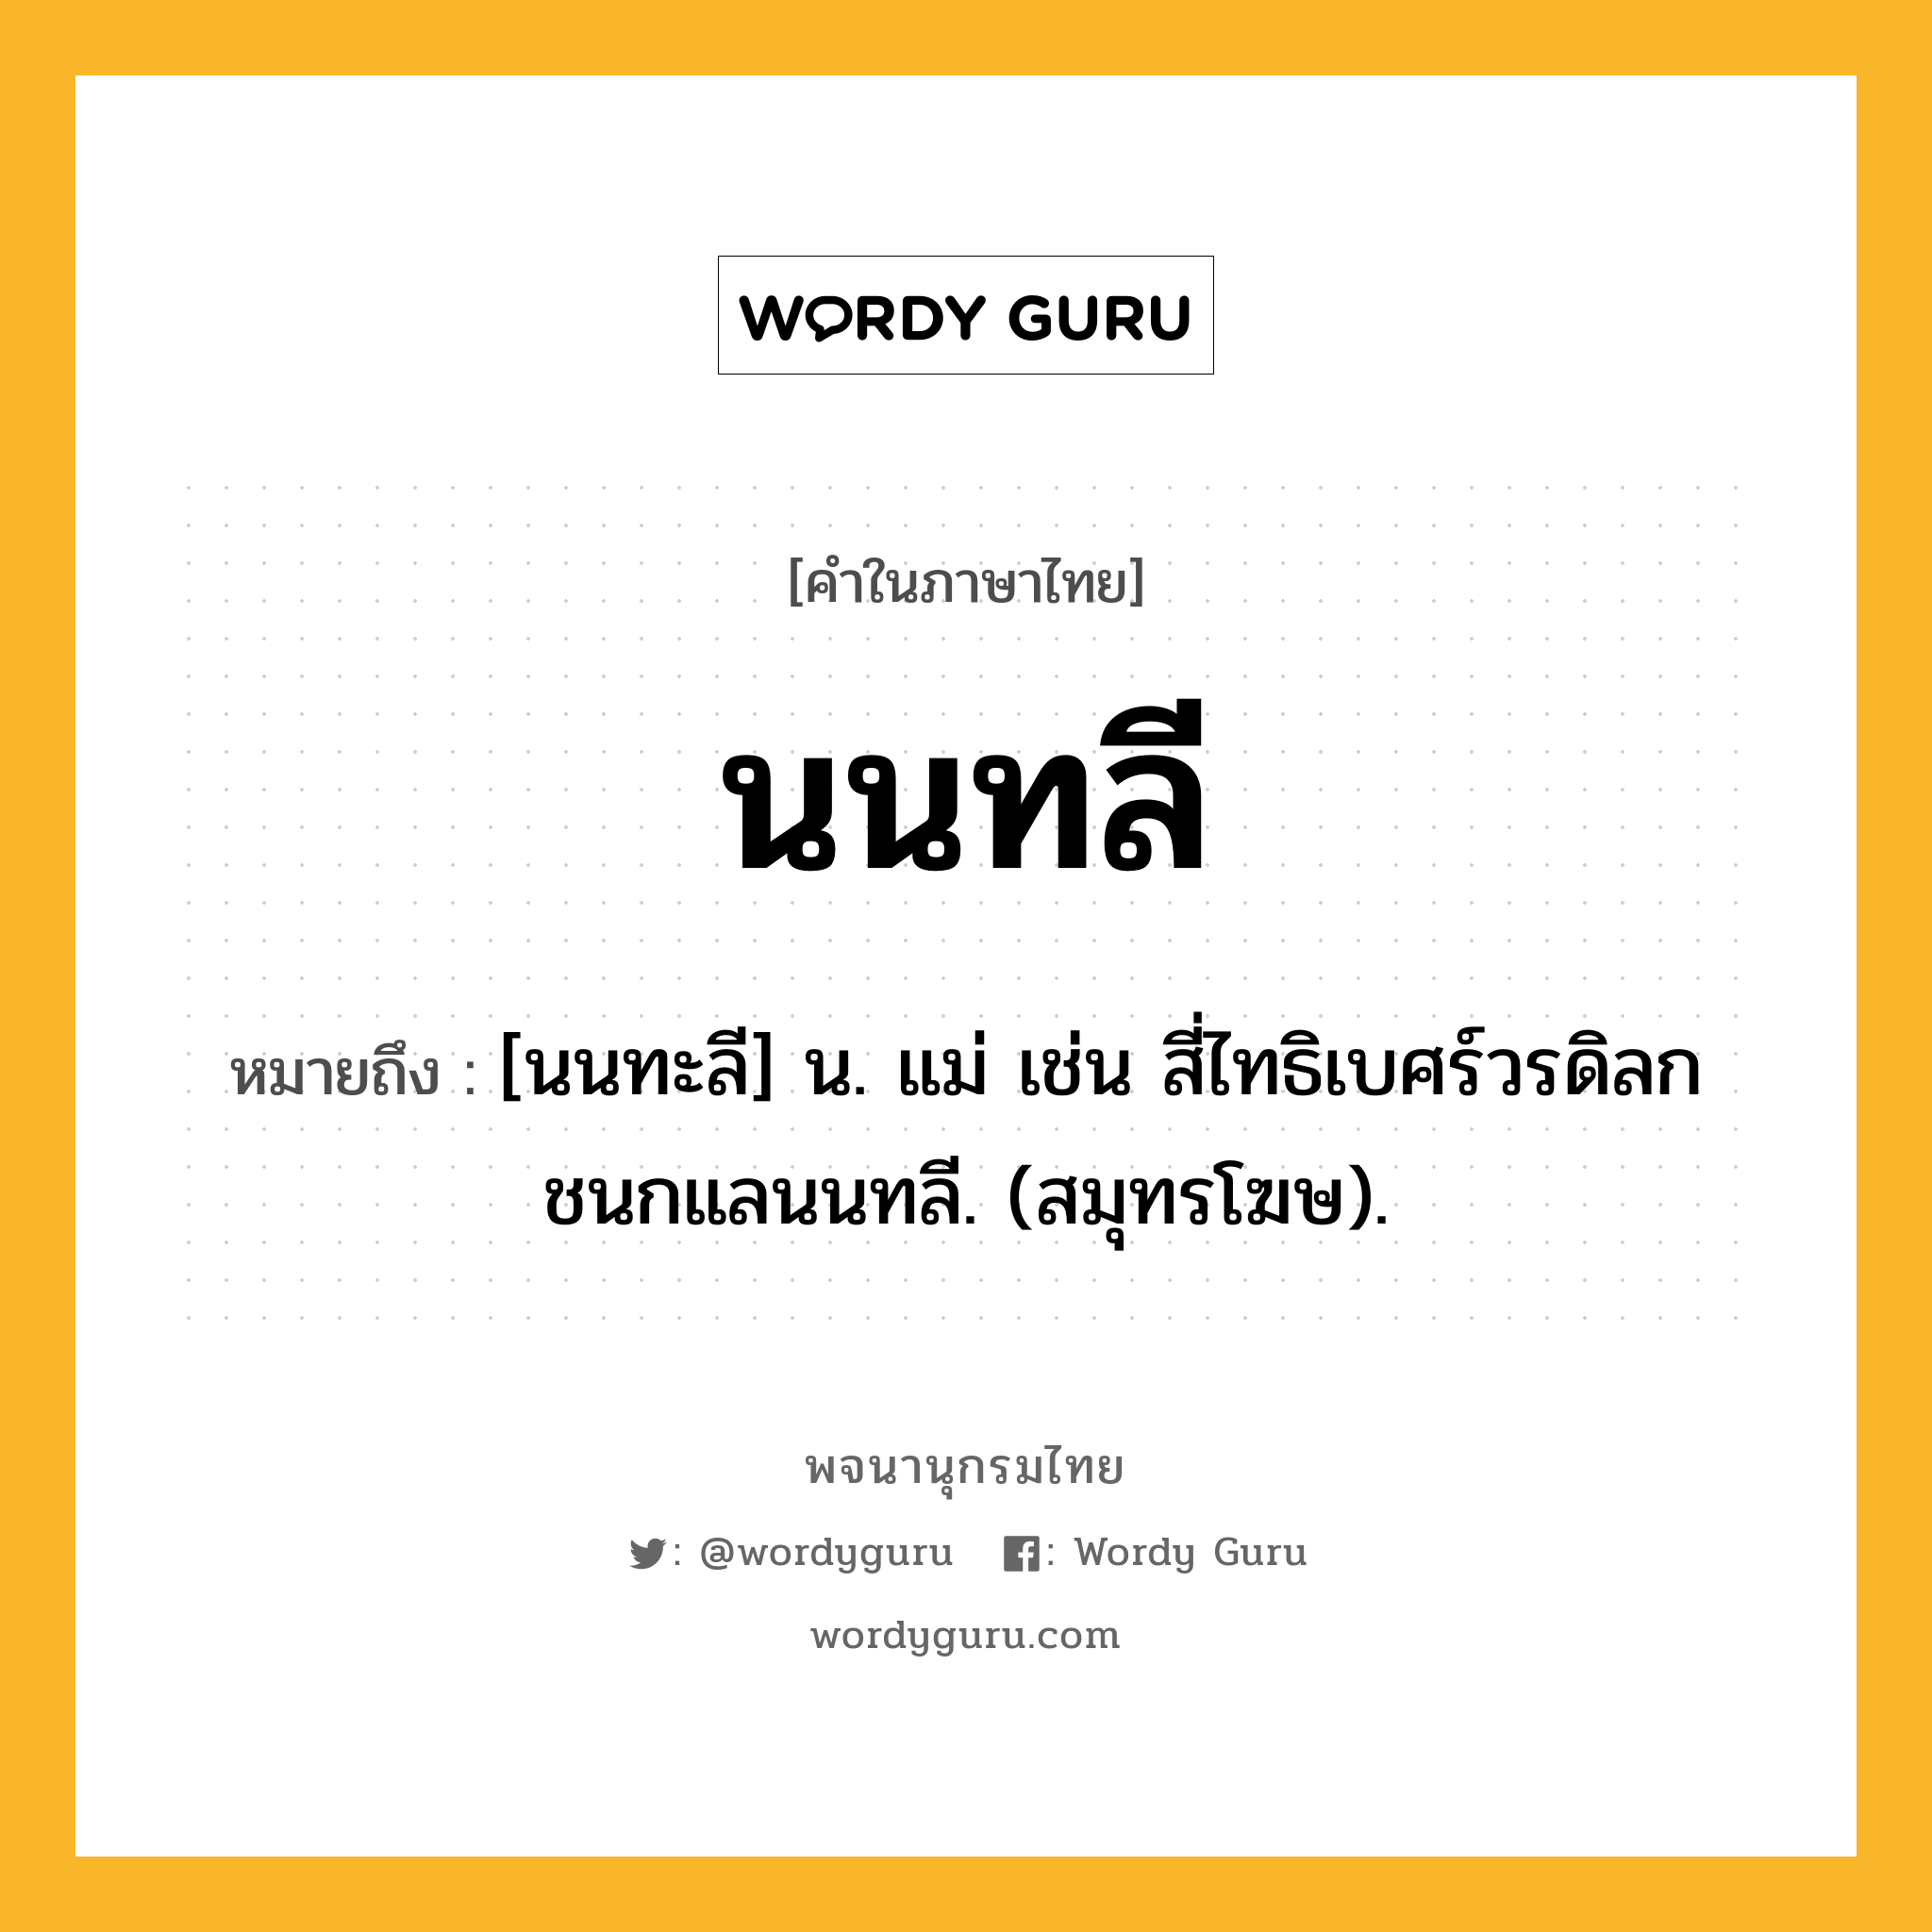 นนทลี หมายถึงอะไร?, คำในภาษาไทย นนทลี หมายถึง [นนทะลี] น. แม่ เช่น สี่ไทธิเบศร์วรดิลก ชนกแลนนทลี. (สมุทรโฆษ).